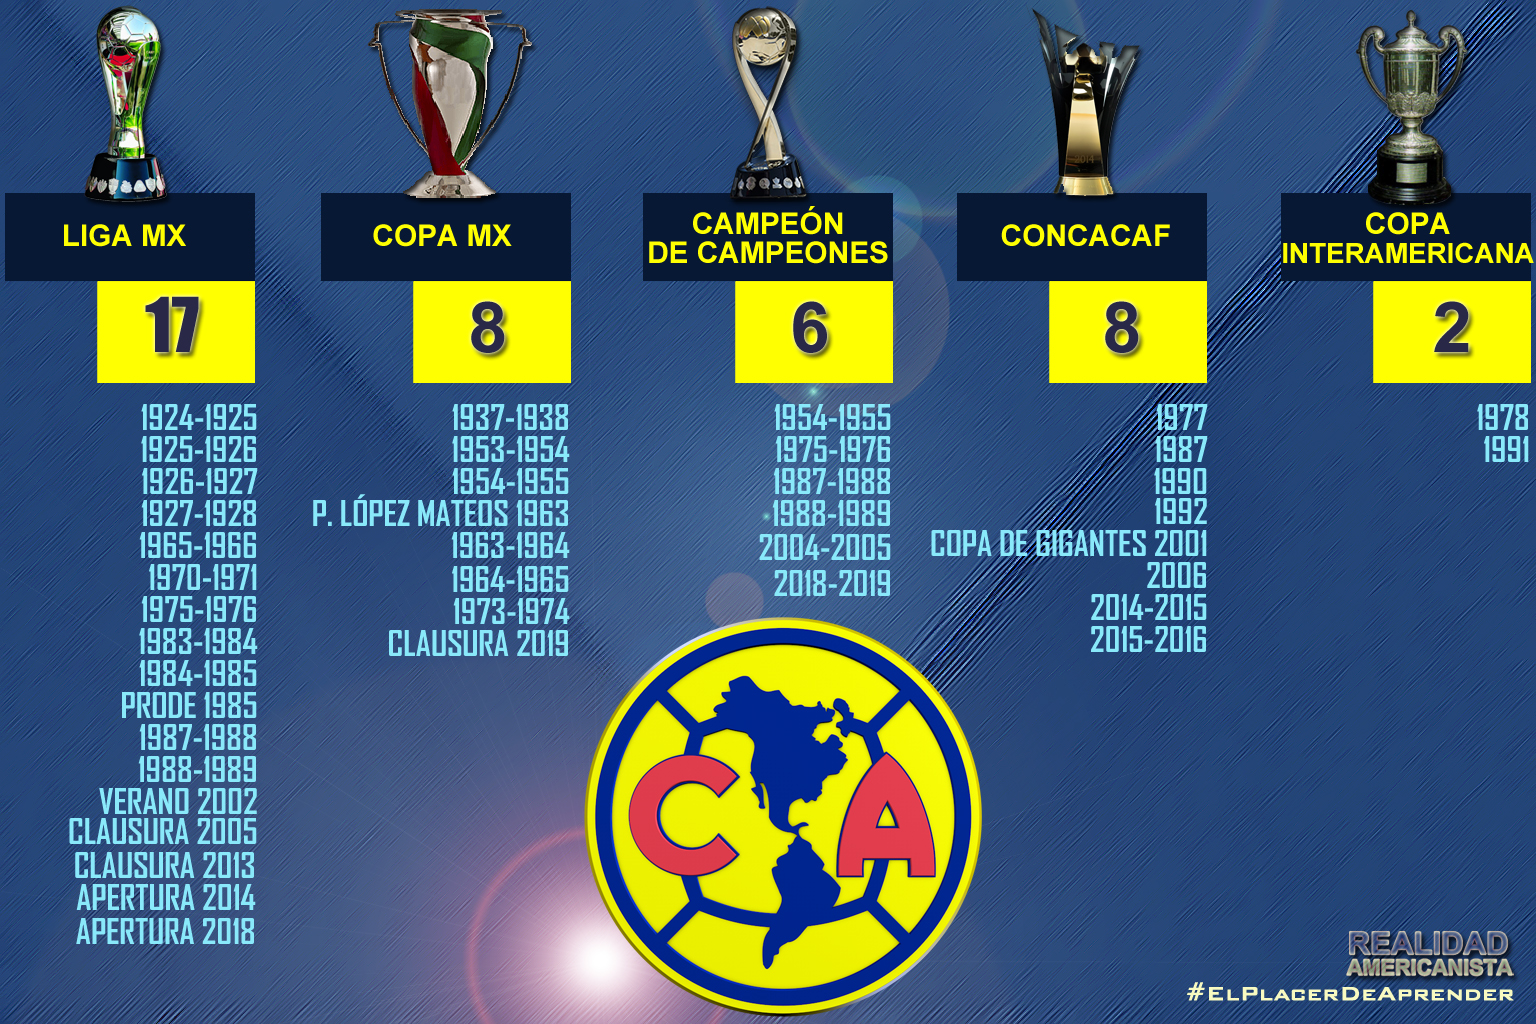 Títulos del América: cuántos campeonatos tiene en Liga MX y en total